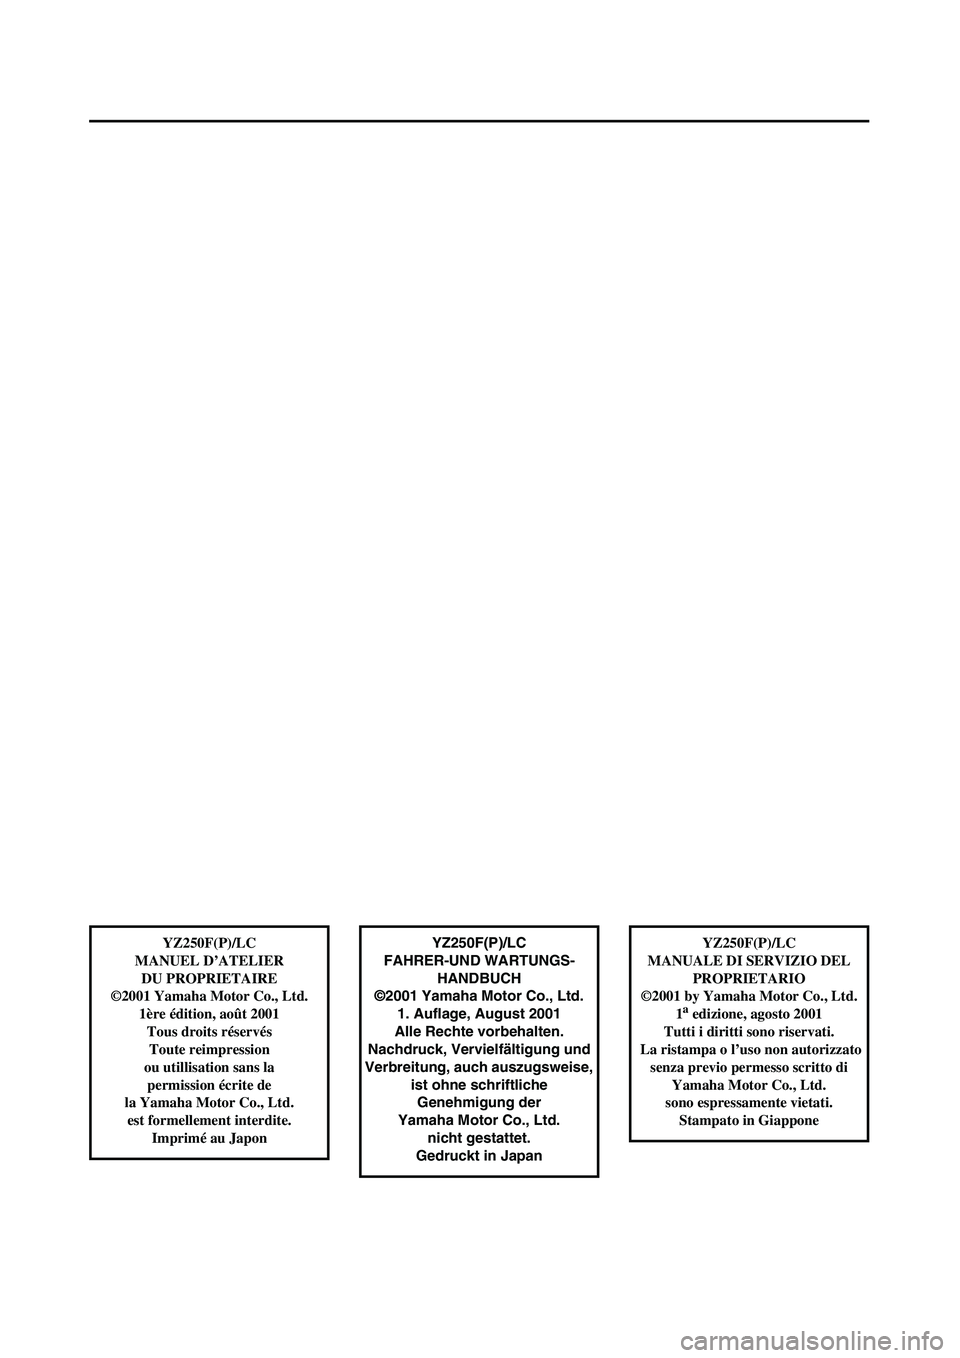 YAMAHA YZ250F 2002  Owners Manual  
YZ250F(P)/LC
FAHRER-UND WARTUNGS-
HANDBUCH
©2001 Yamaha Motor Co., Ltd.
1. Auflage, August 2001
Alle Rechte vorbehalten.
Nachdruck, Vervielfältigung und
Verbreitung, auch auszugsweise, 
ist ohne s